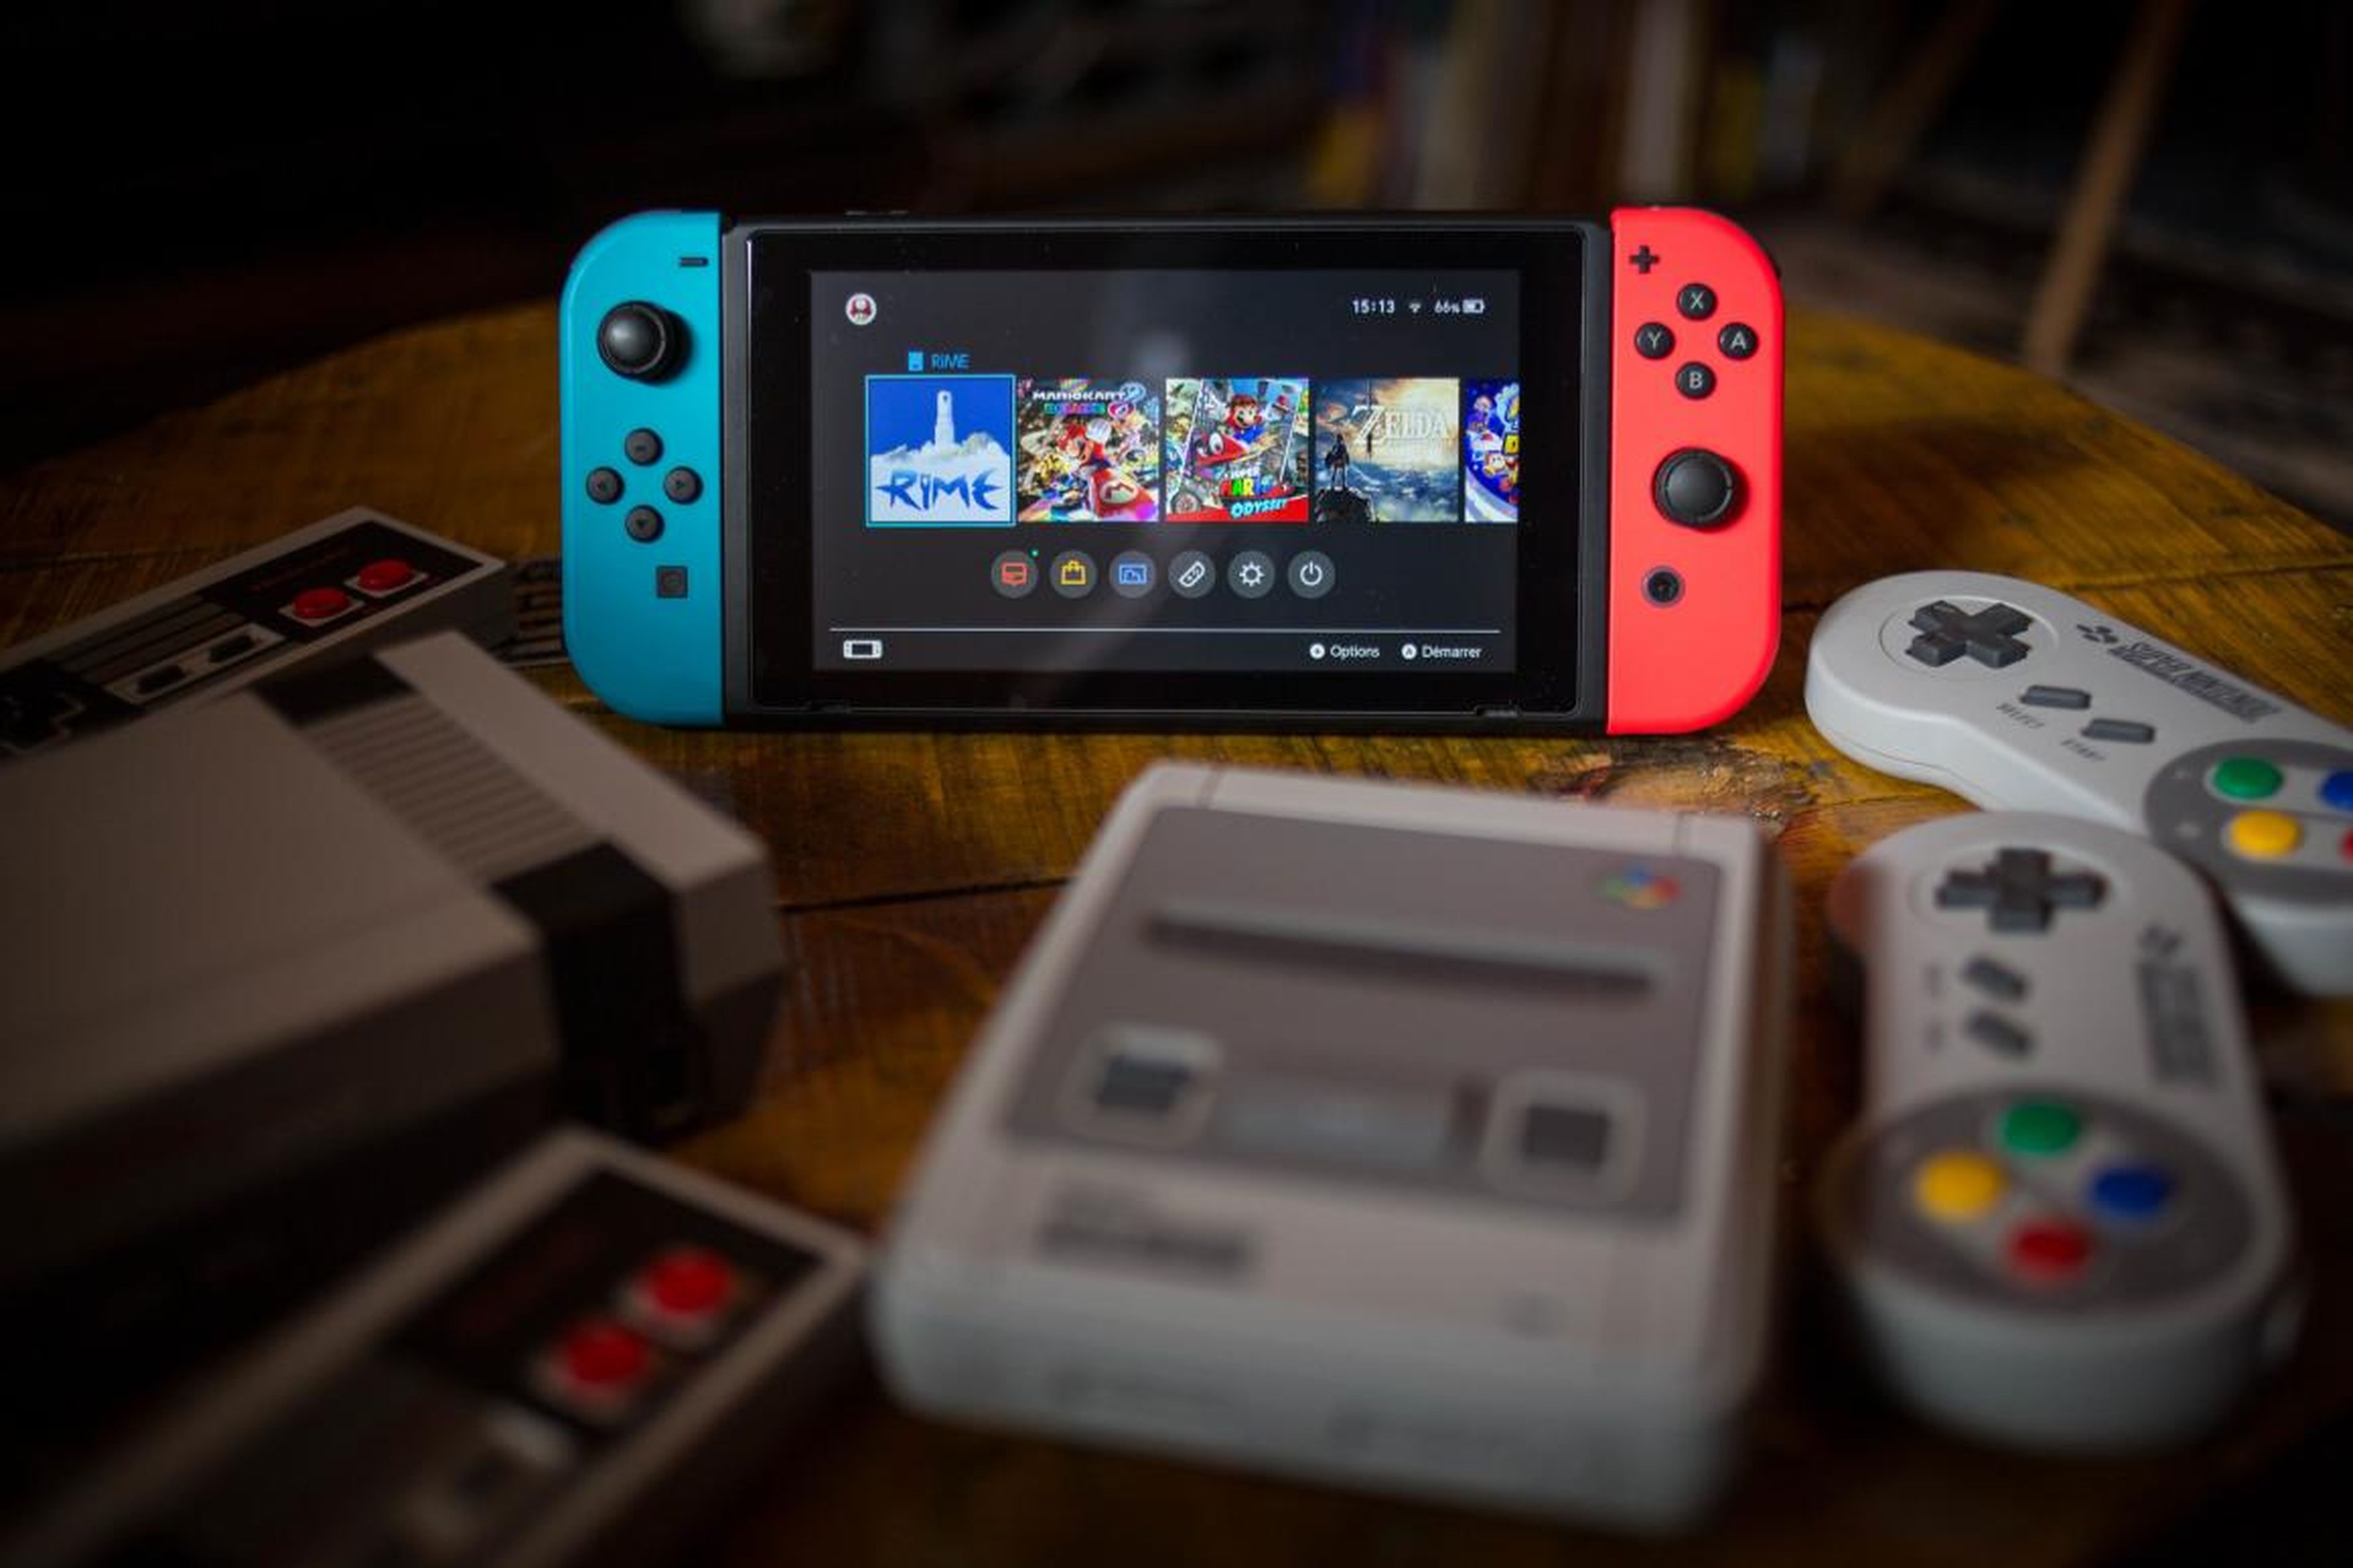 Una Nintendo Switch rodeada de un NES (Nintendo Entertainment System) Classic Mini (izquierda) y un SNES (Super Nintendo Entertainment System) Classic Mini (derecha) consolas de videojuegos.